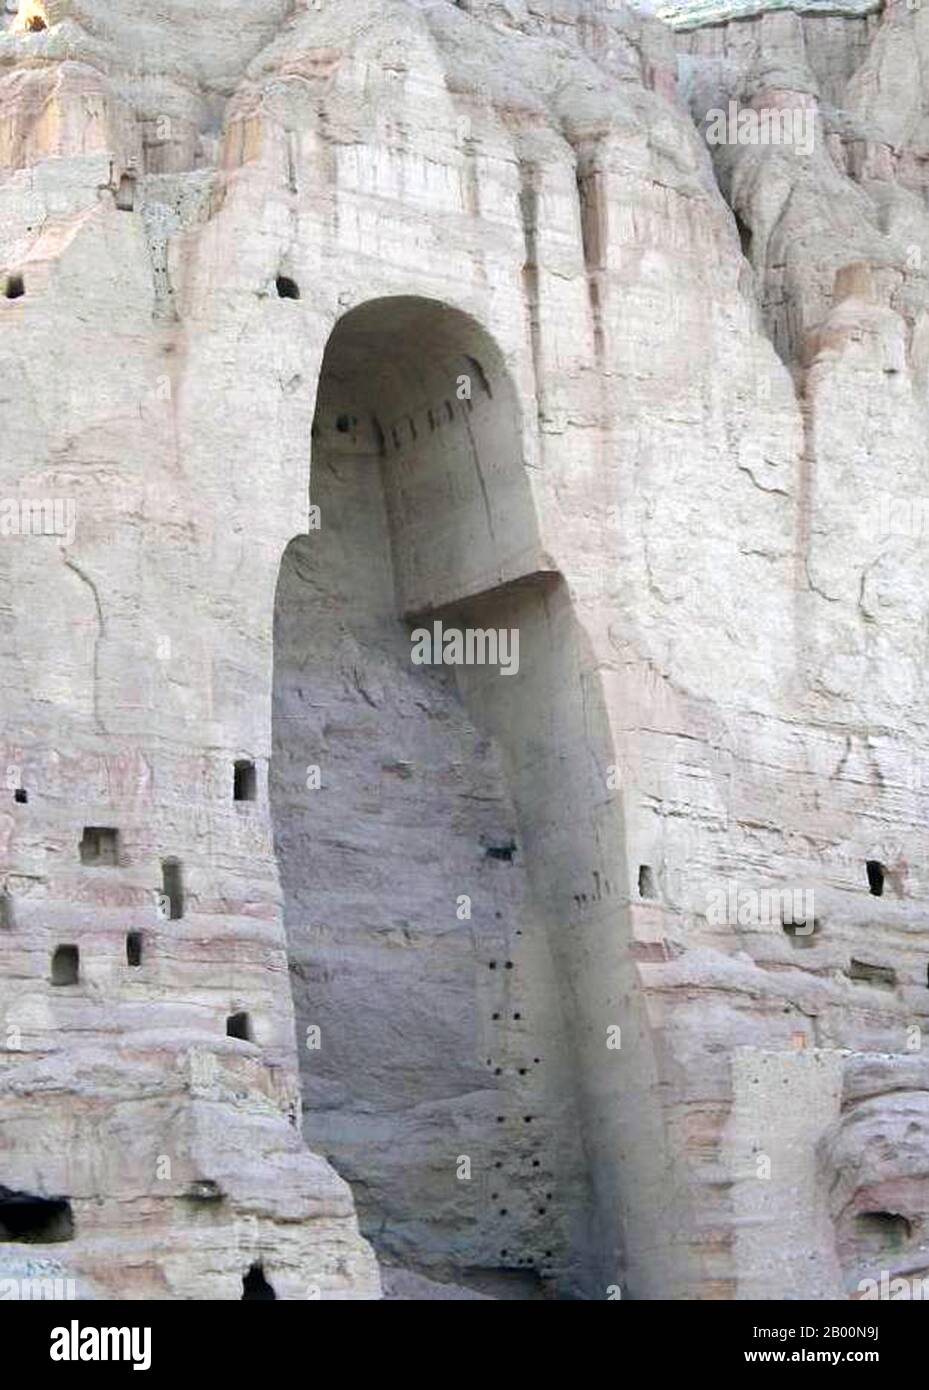 Afghanistan: Grotta del Buddha di Bamiyan nel 2005 dopo la distruzione dell'immagine del Buddha da parte dei talebani nel 2001. I Buddha di Bamiyan erano due statue monumentali del VI secolo di Buddha in piedi scolpiti sul lato di una scogliera nella valle di Bamiyan nella regione di Hazarajat dell'Afghanistan centrale, situata a 230 km (143 miglia) a nord-ovest di Kabul ad un'altitudine di 2,500 metri (8,202 piedi). Costruite nel 507 d.C., le più grandi nel 554 d.C., le statue rappresentavano lo stile classico mescolato di Gandhara. I corpi principali erano scavati direttamente dalle scogliere di arenaria. Foto Stock